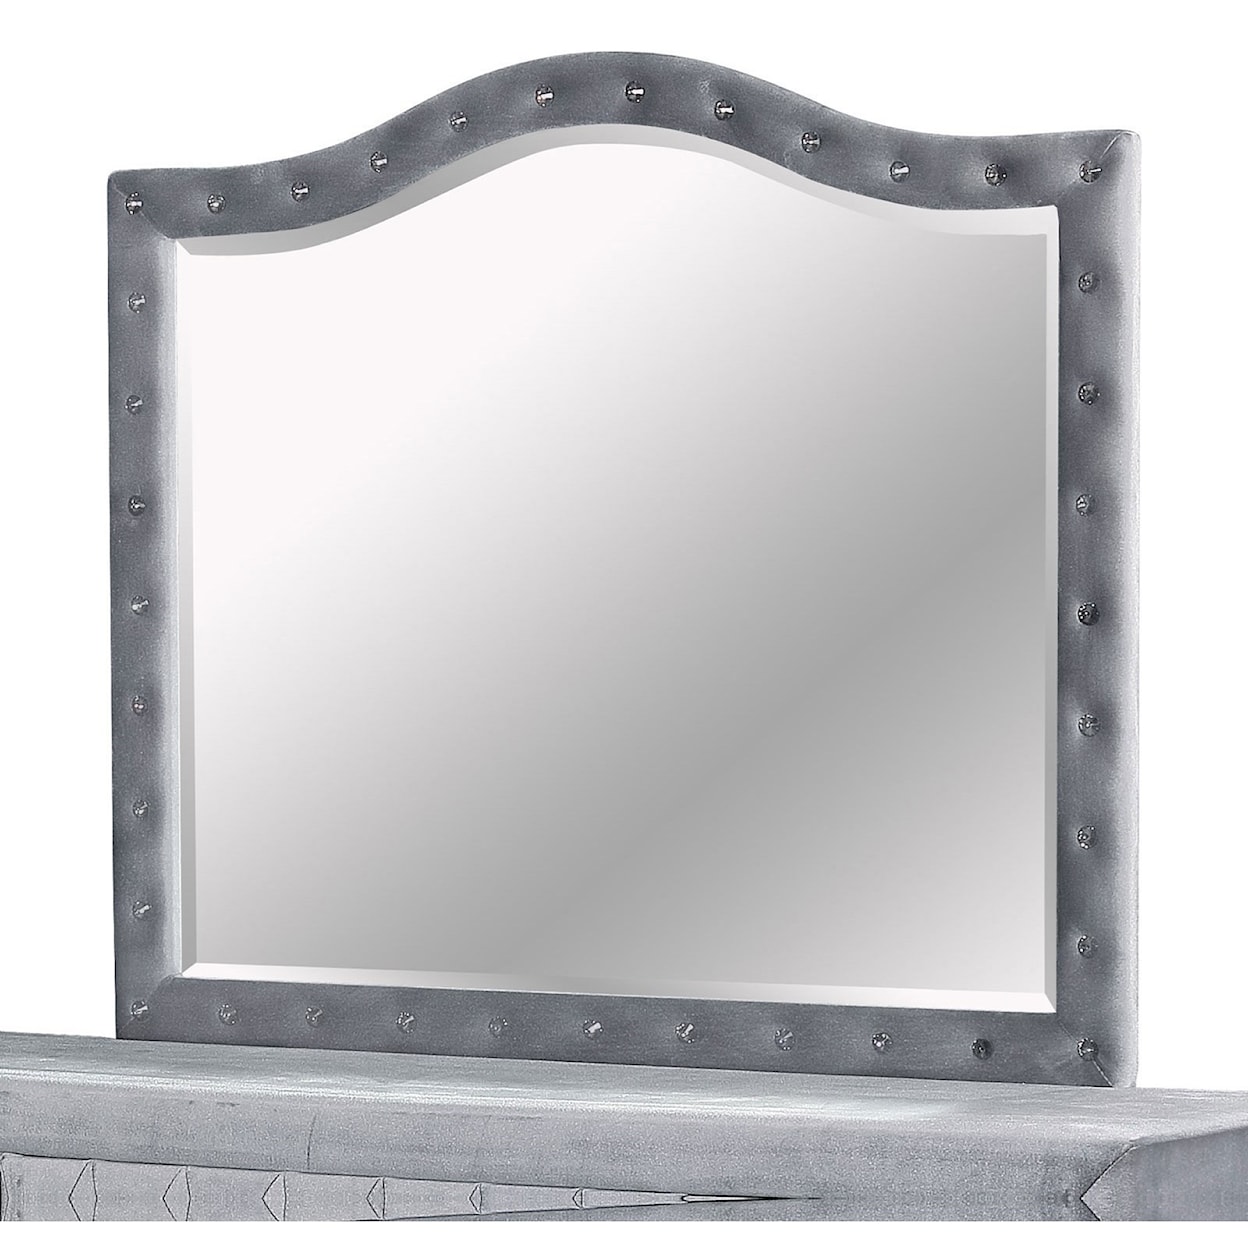 FUSA Alzir Dresser Mirror with Button Tufted Frame